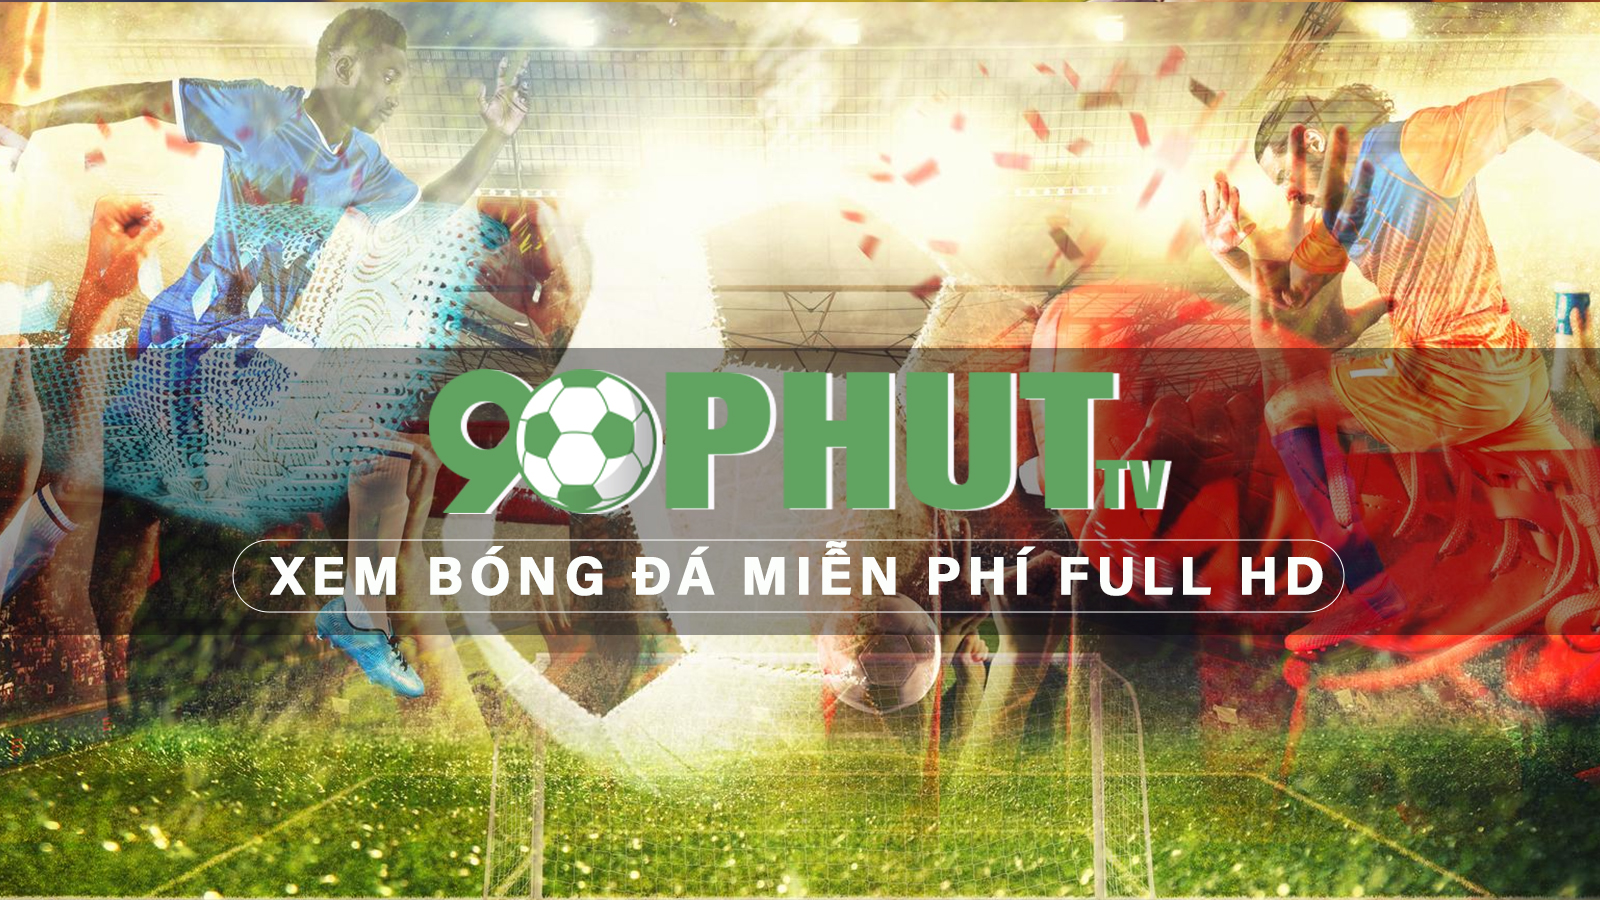 90Phut TV - Xem bóng đá miễn phí Full HD